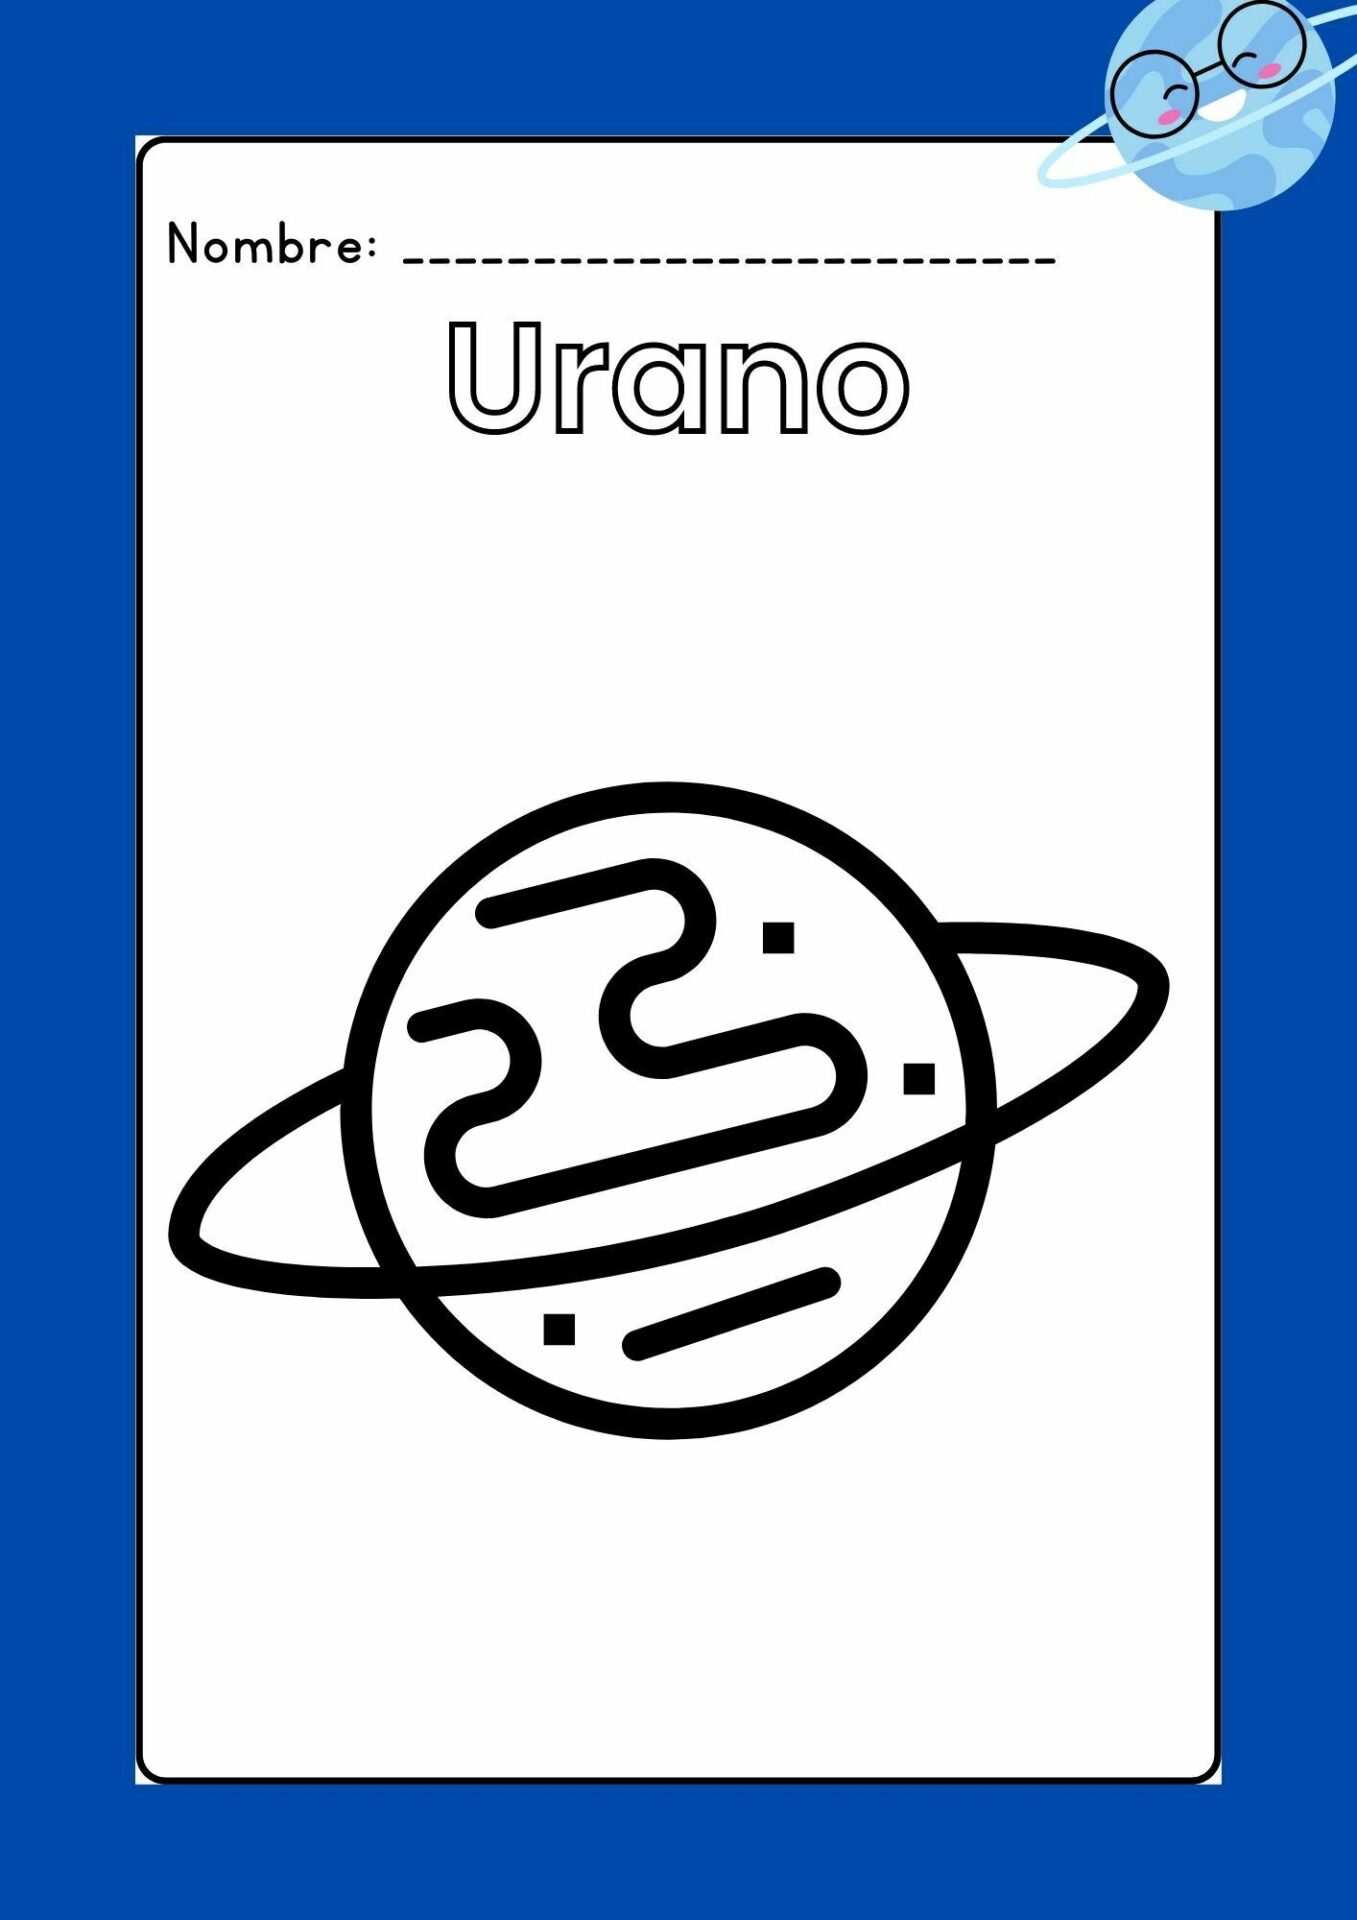 Imagen Urano